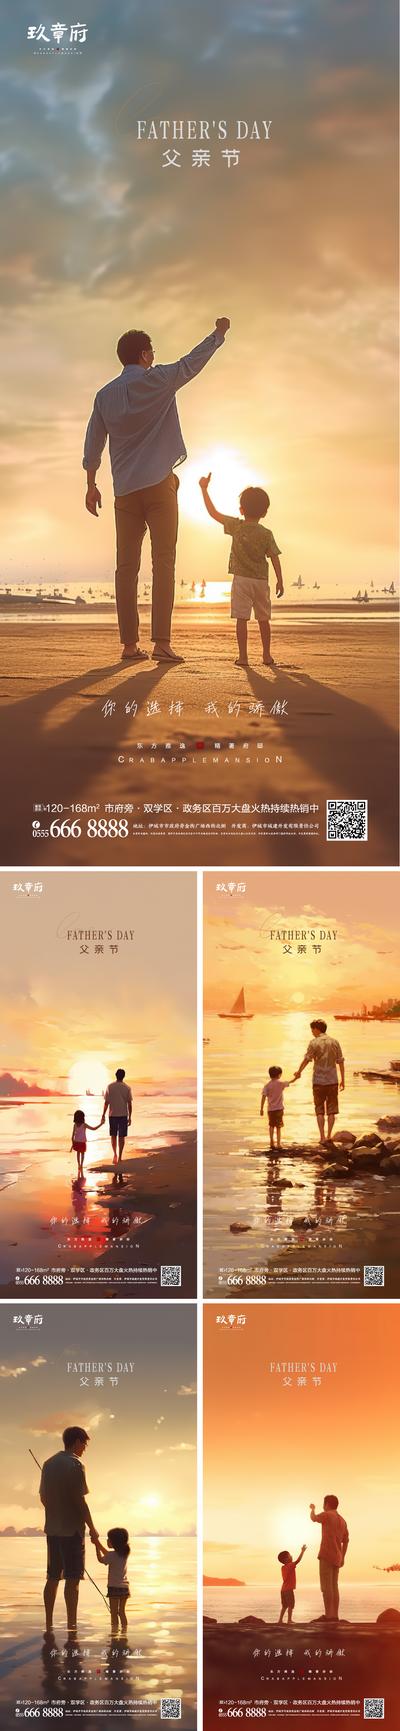 南门网 海报 公历节日 父亲节 地产 夕阳 剪影 影子 温馨 系列